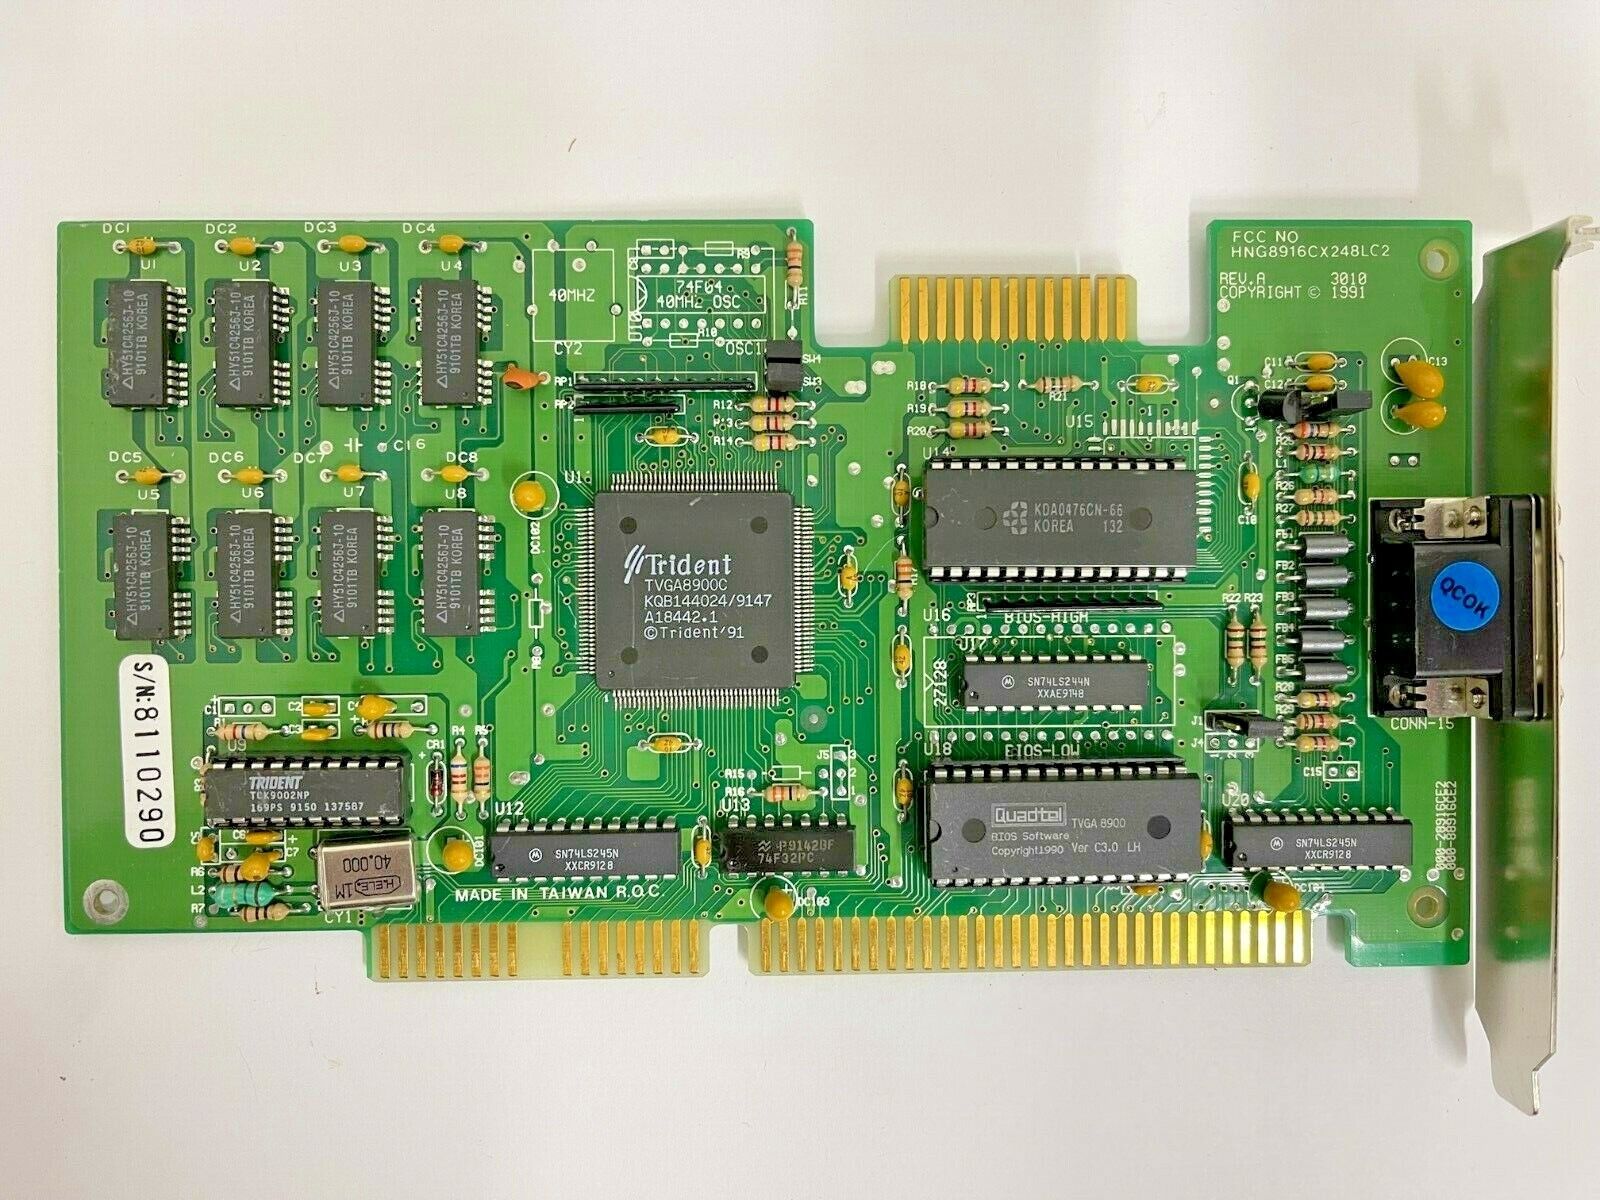 RARE VINTAGE 1991 TRIDENT TVGA8900C 1 MEG 16 BIT ISA VGA CARD GREEN PCB MXB32